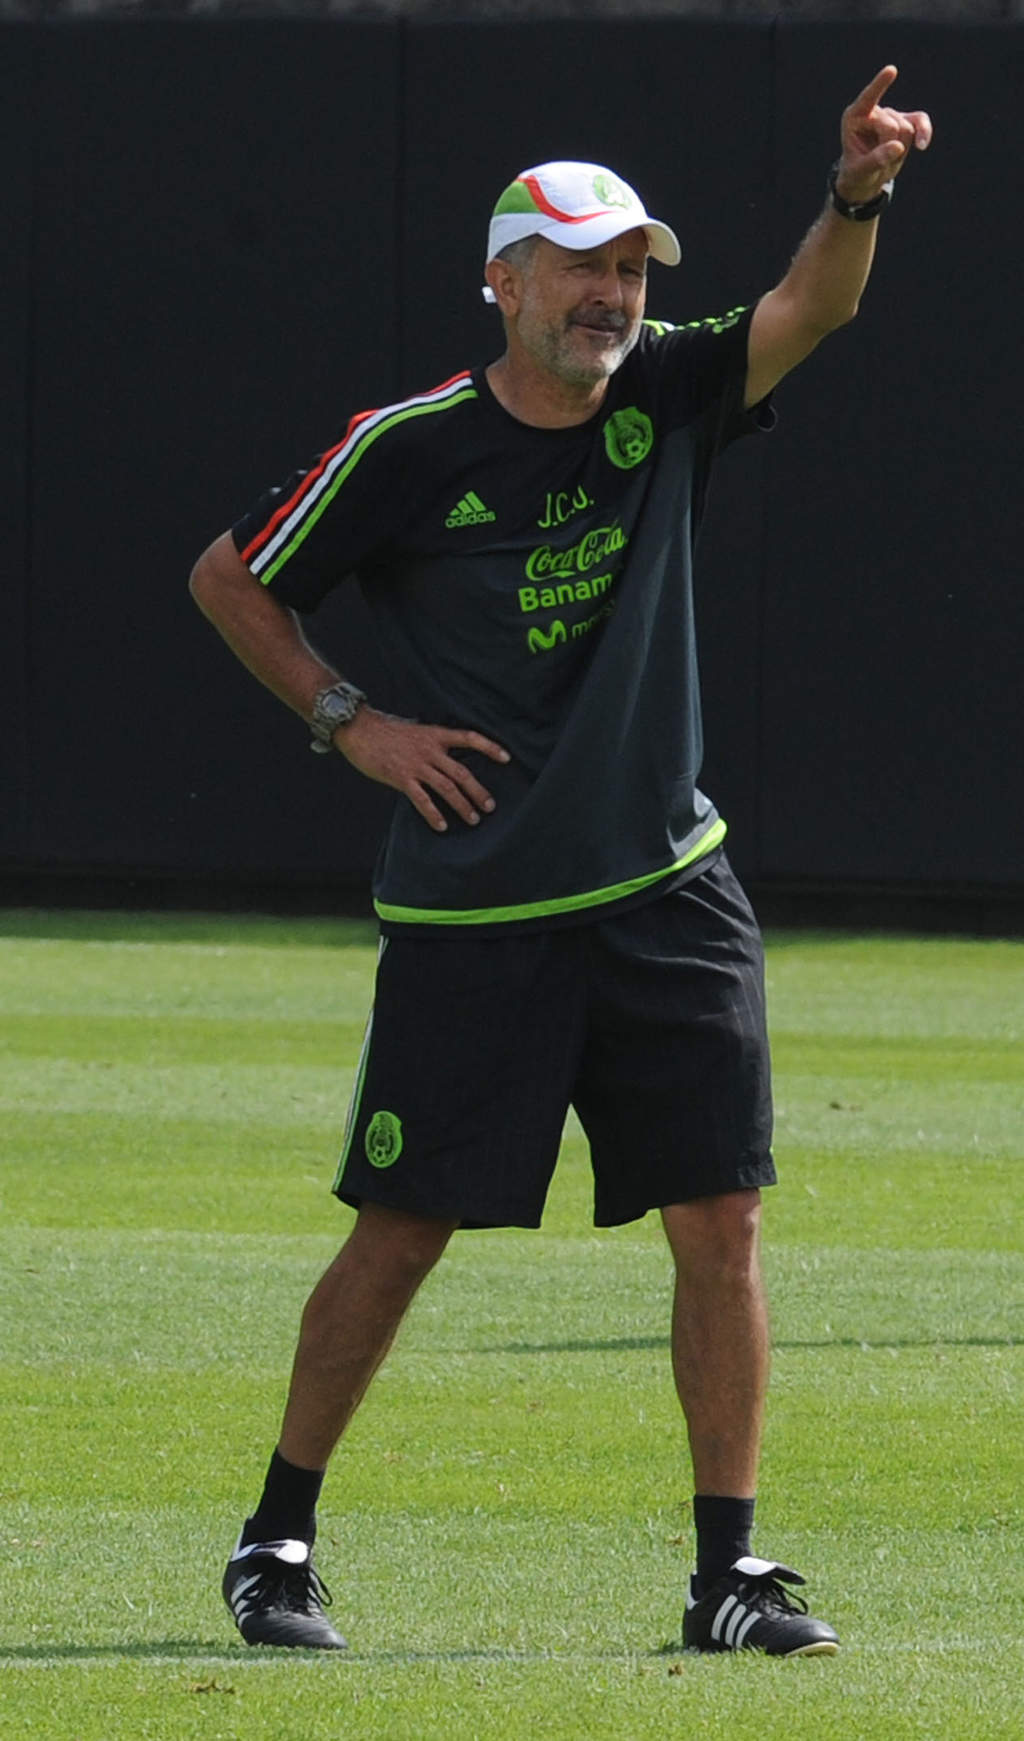 Por la tarde habrá otra sesión de entrenamiento y el estratega Juan Carlos Osorio al fin podría trabajar con equipo completo.